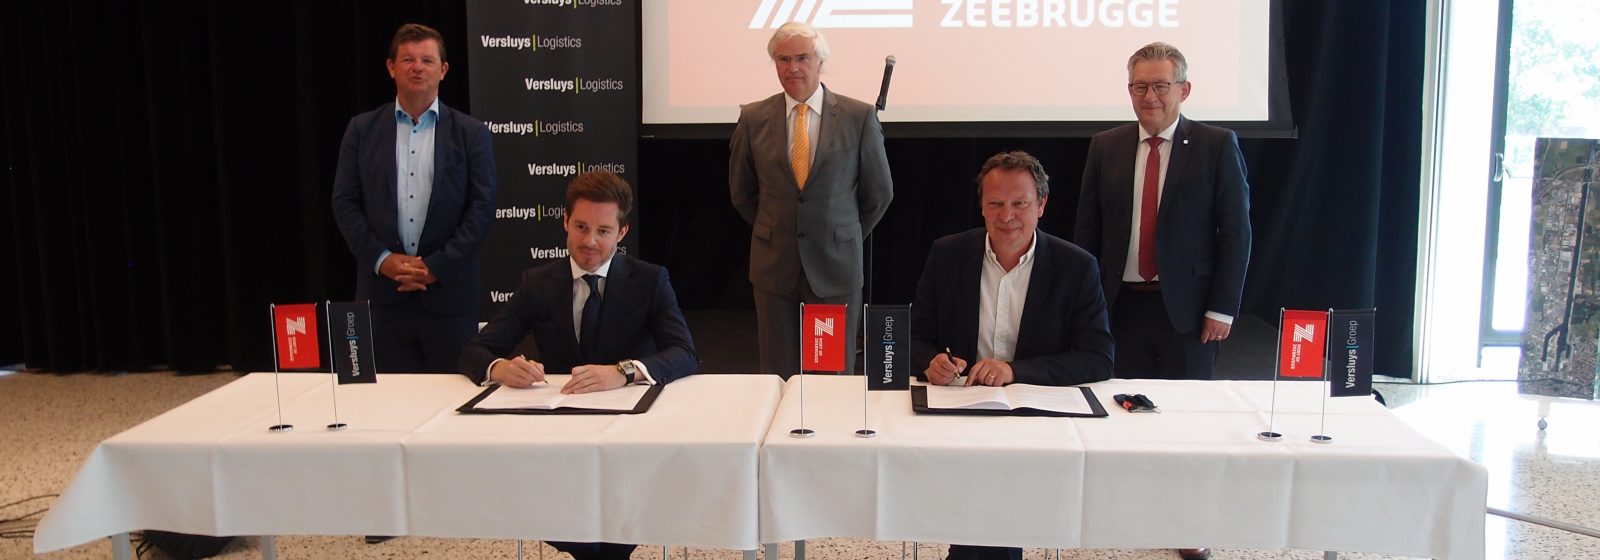 Ondertekening intentieverklaring Haven Zeebrugge en Luchthaven Oostende